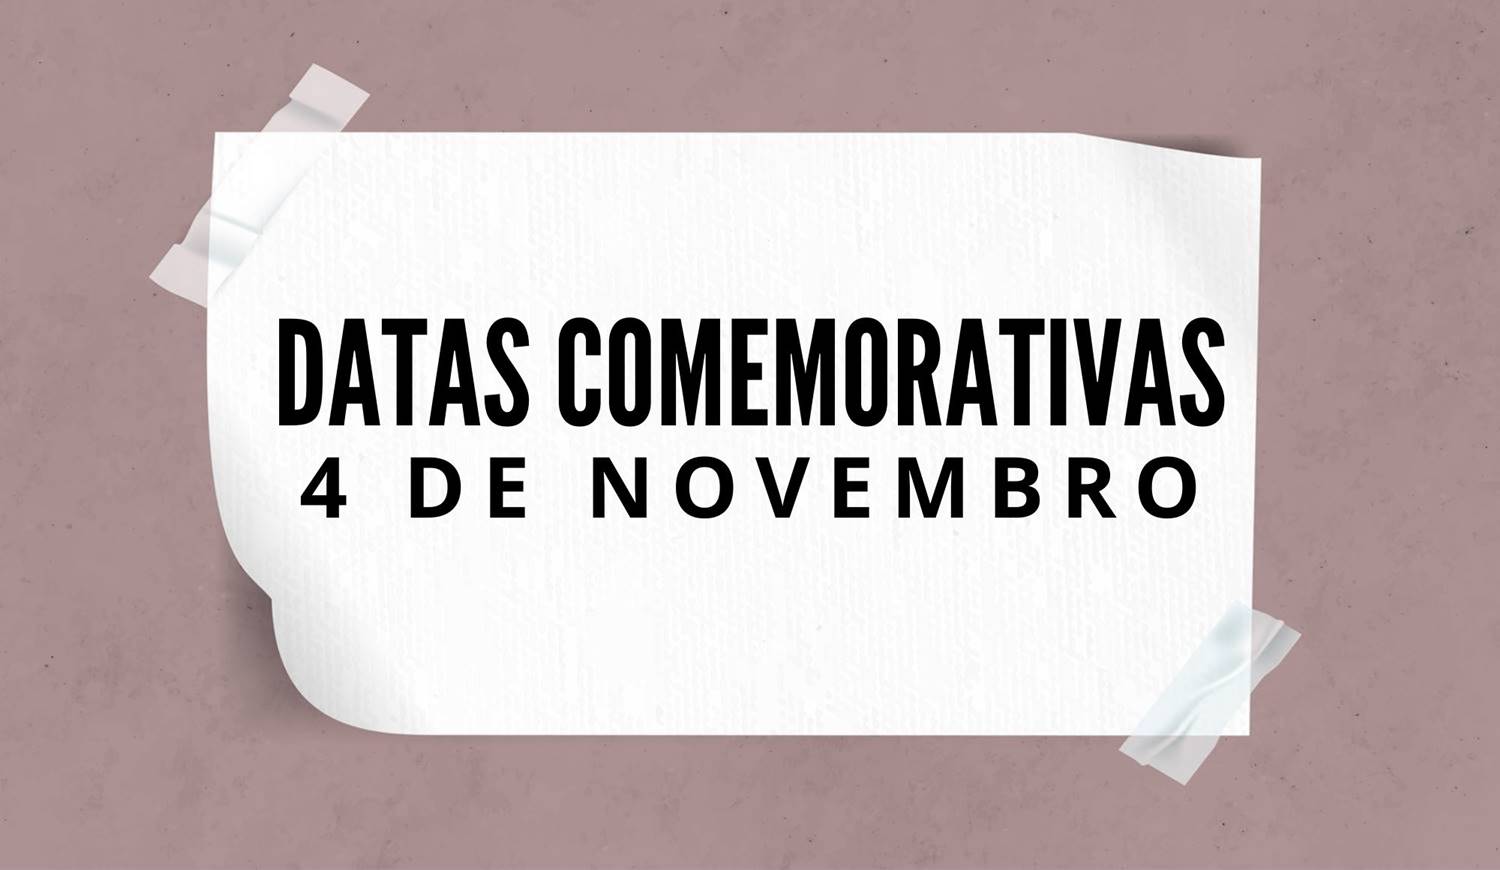 Foto com a frase: "Datas comemorativas - 4 de novembro".